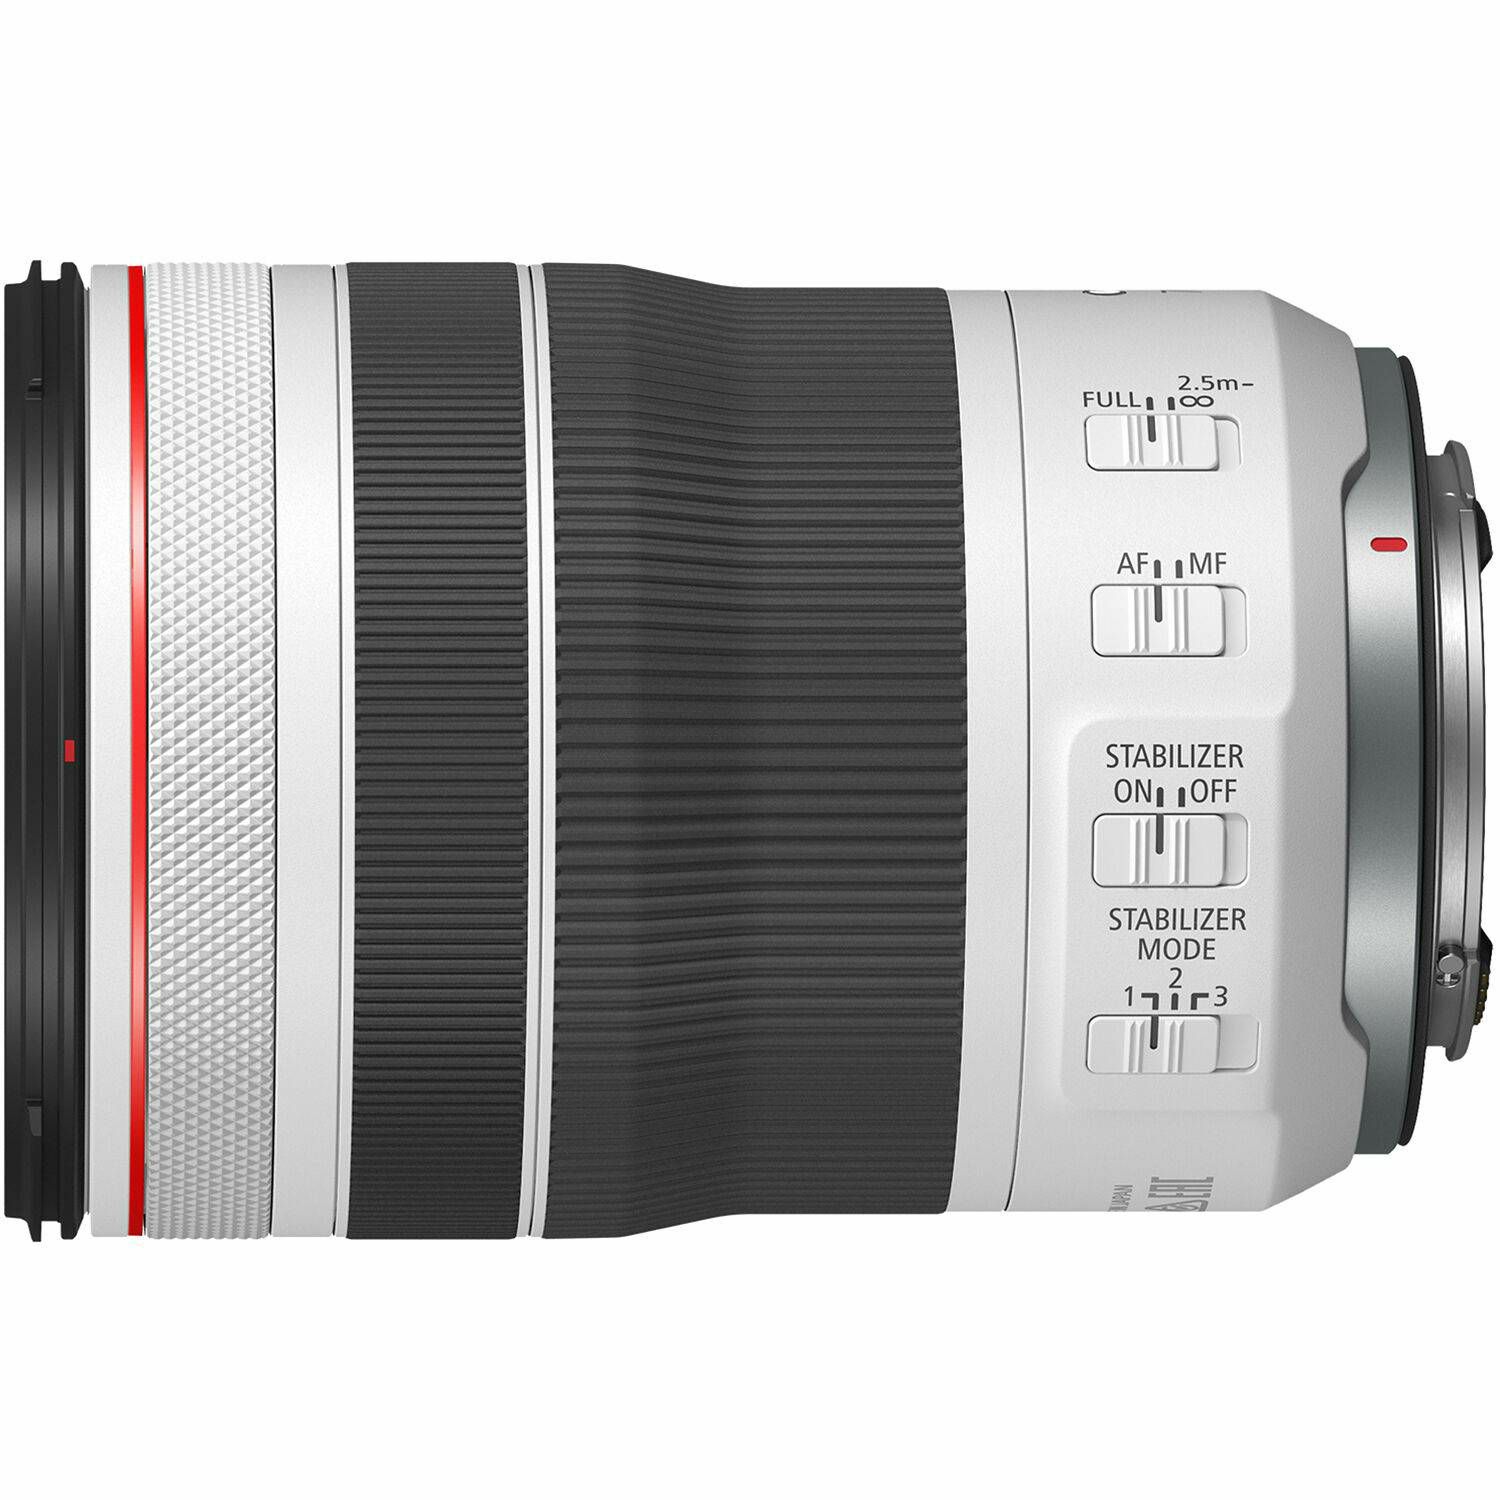 Canon RF 70-200mm f/4 L IS USM telefoto objektiv (4318C005AA)